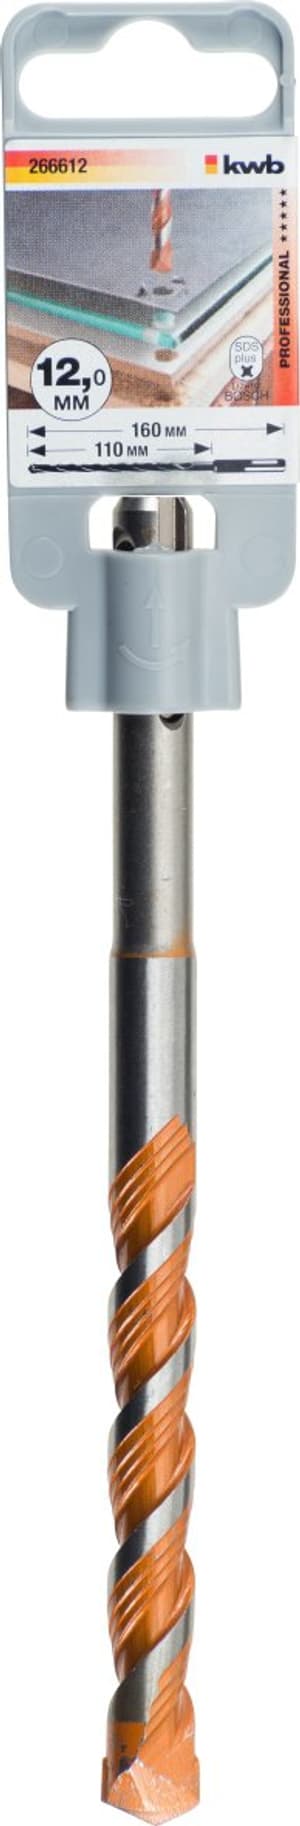 Mèches EASY CUT universelles marteaux perforateurs, avec queue SDS-Plus, ø 12.0 mm